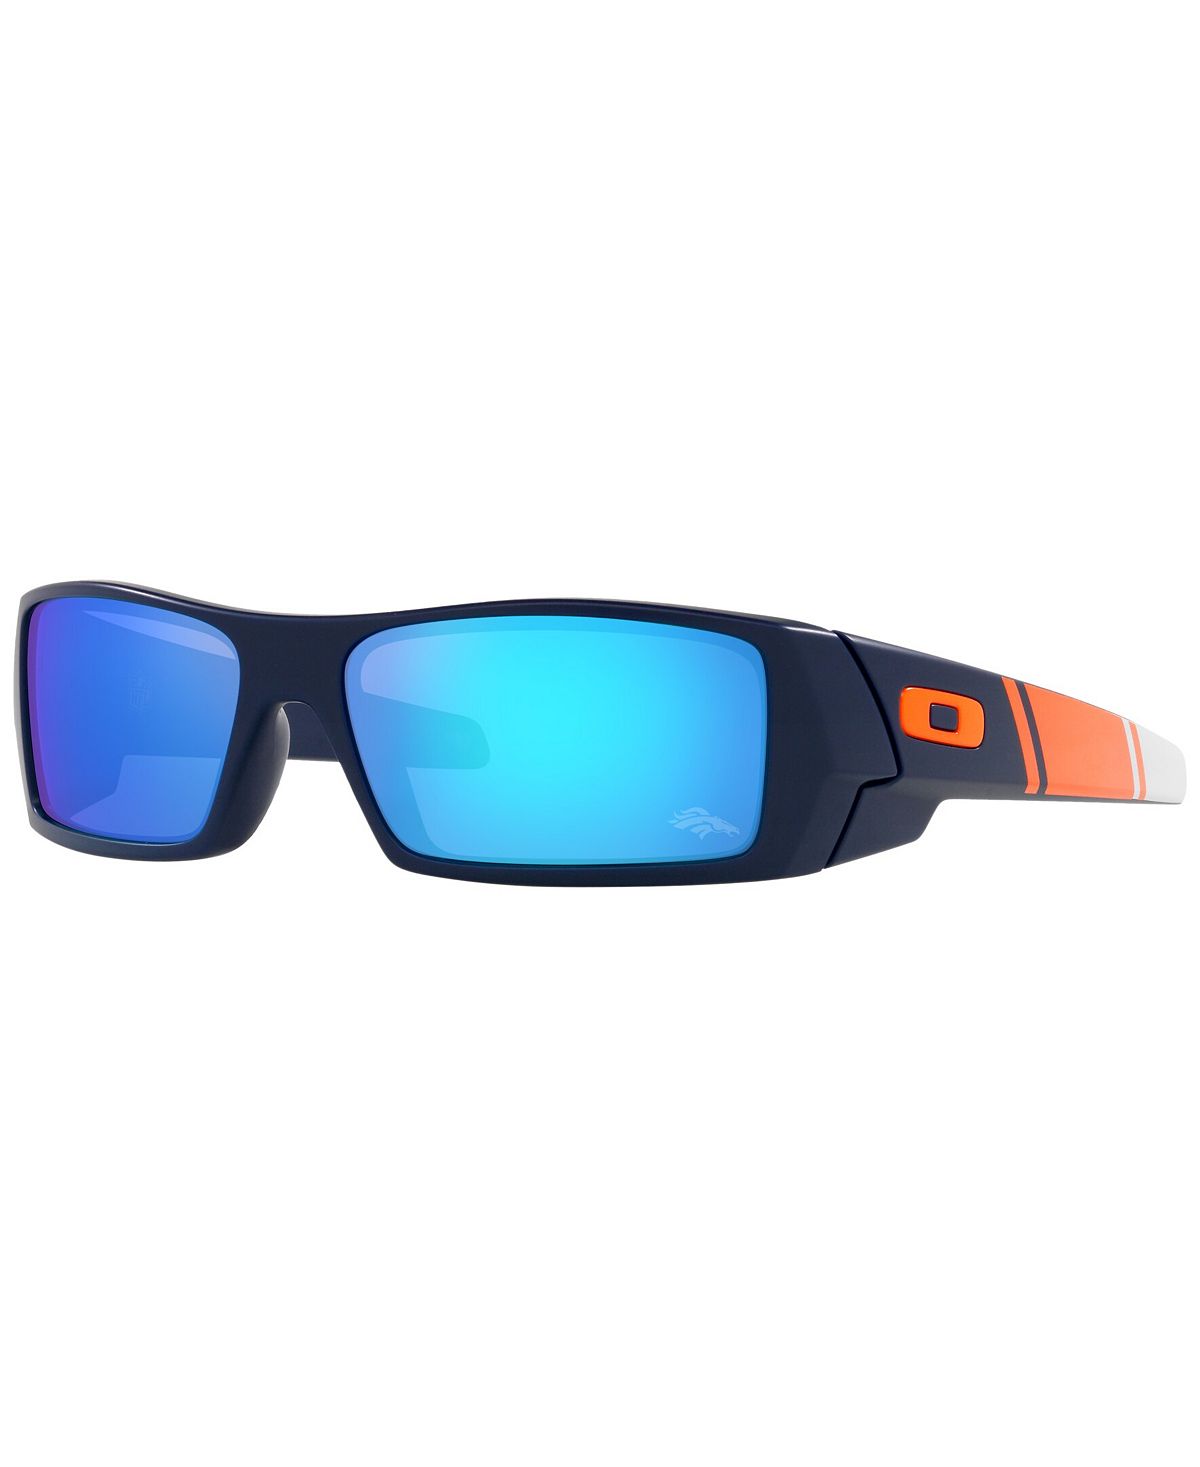 Мужские солнцезащитные очки NFL Collection, Denver Broncos OO9014 60 GASCAN Oakley цена и фото